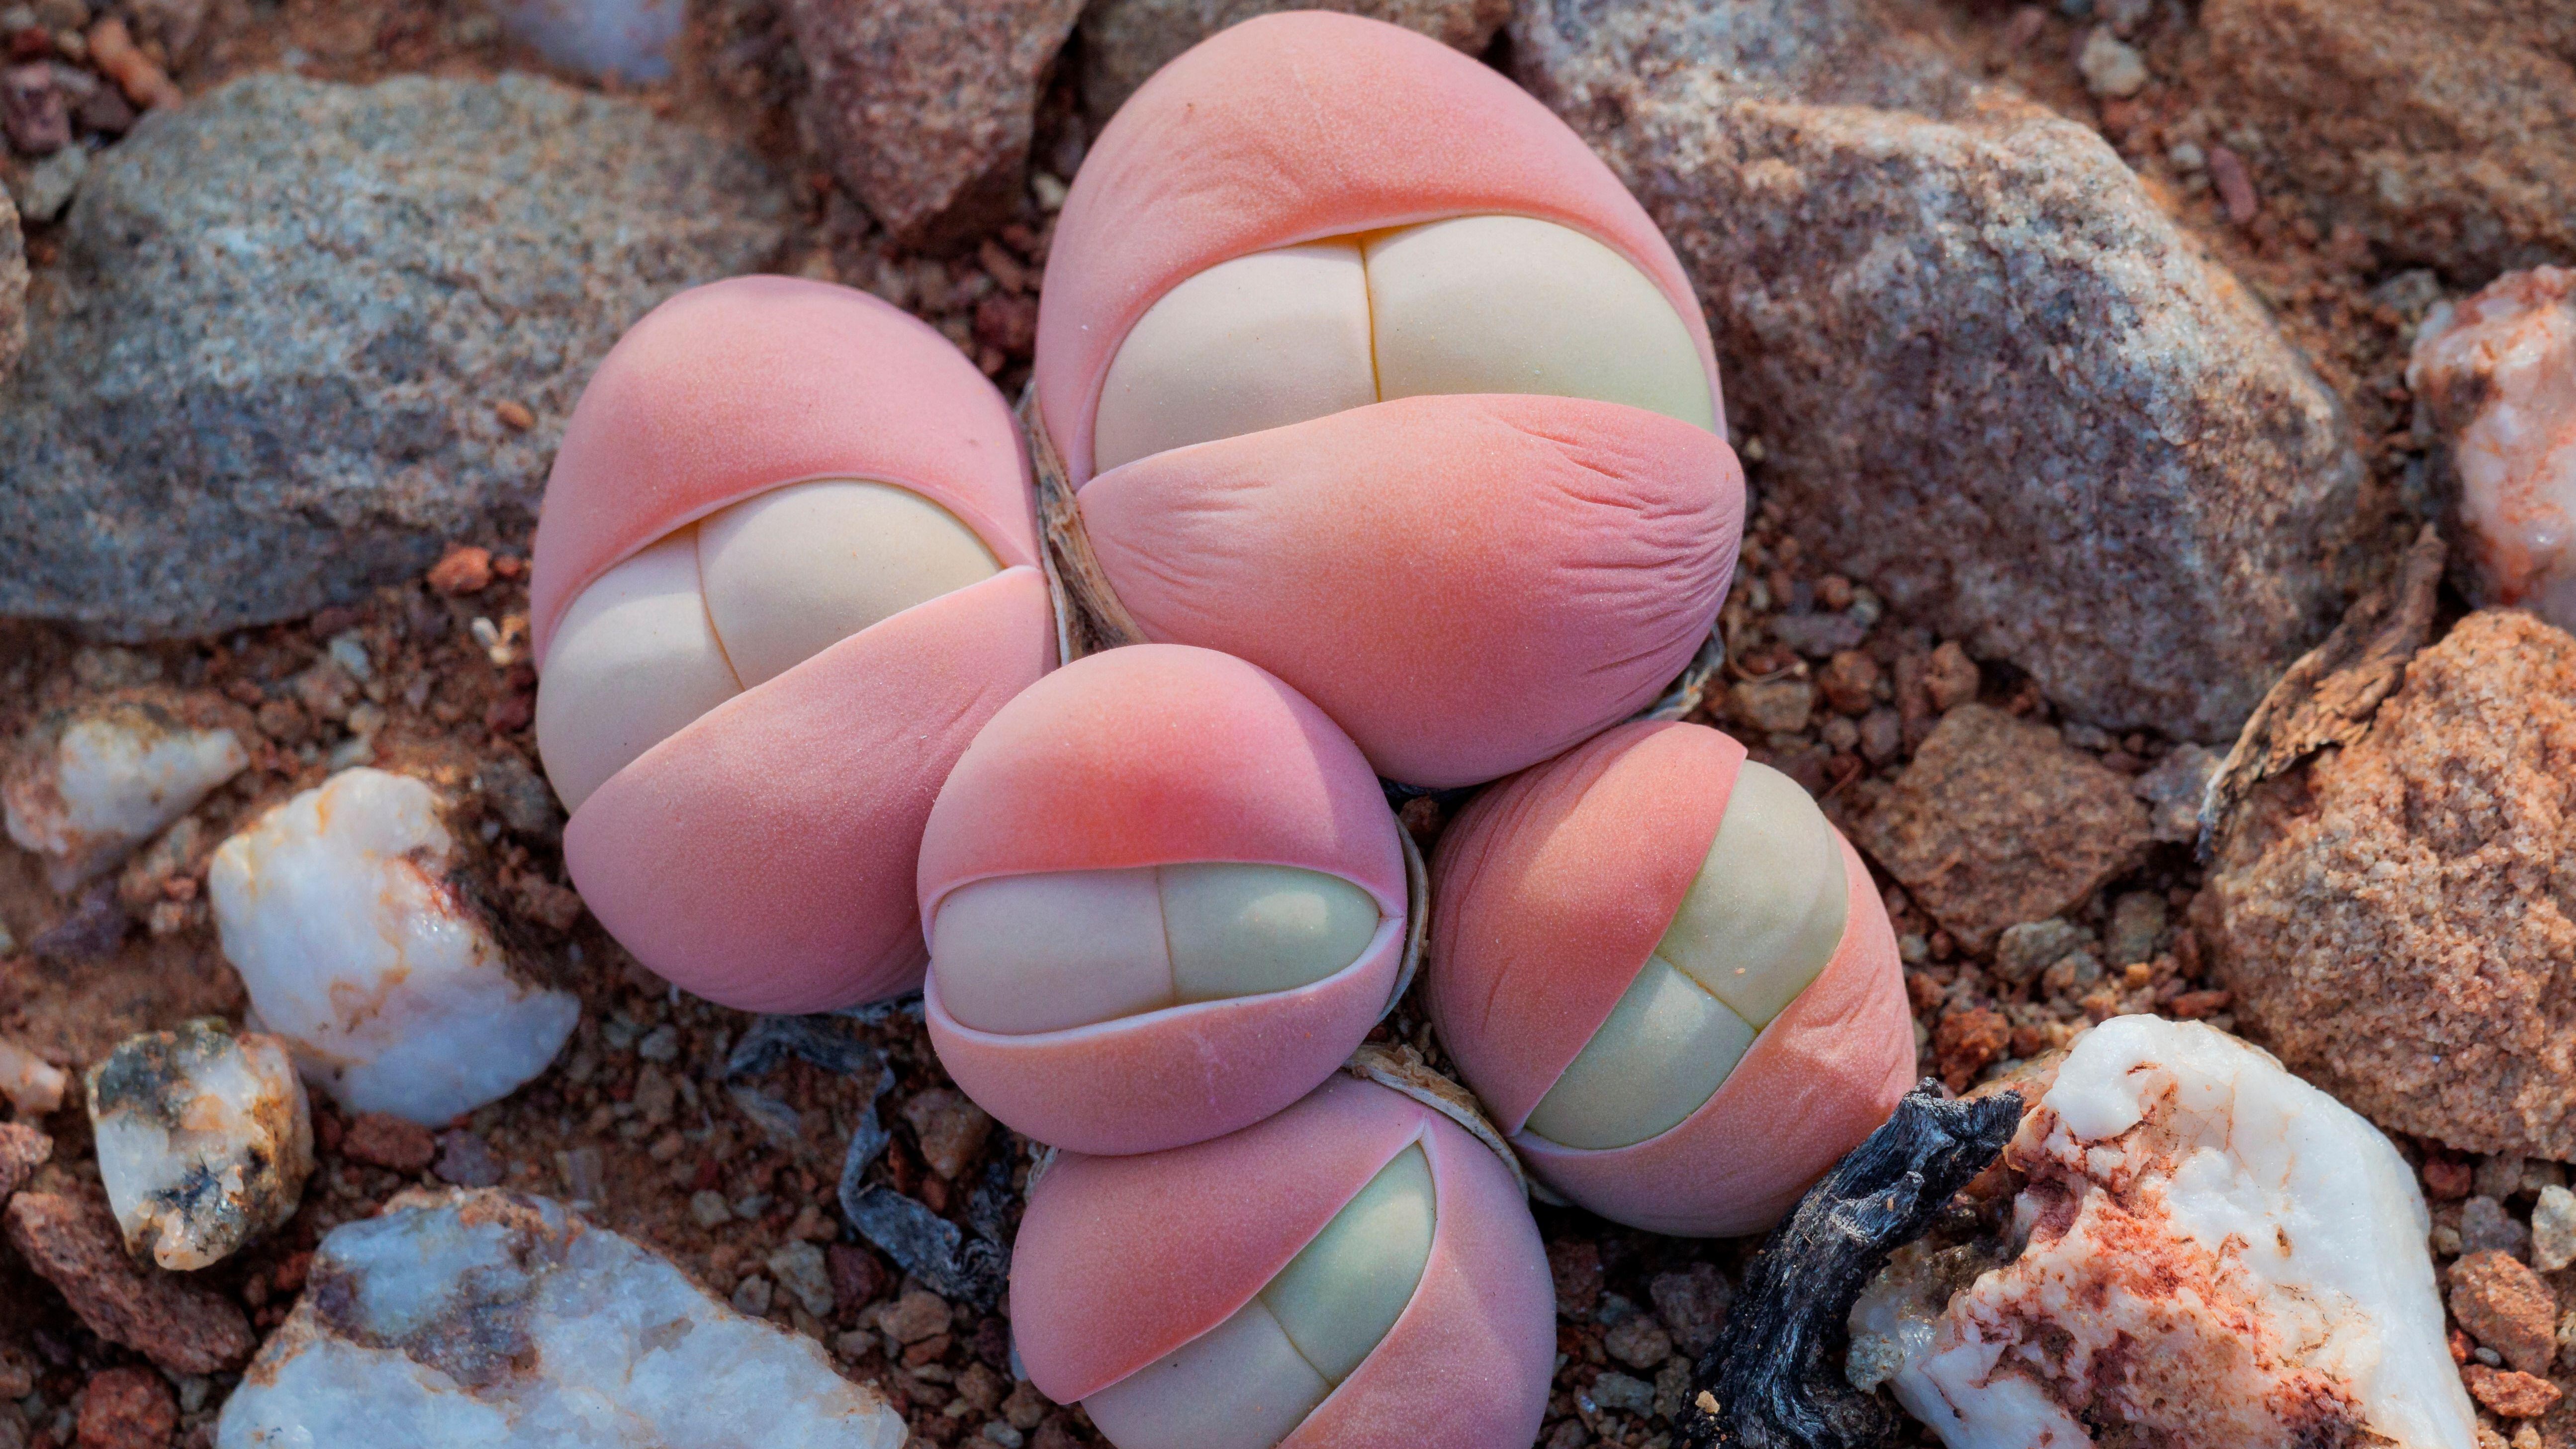 Eine ungewöhnliche Sukkulentenart, die wegen ihrer rosafarbenen, kugelförmigen Blätter auch Baby-Penner genannt wird